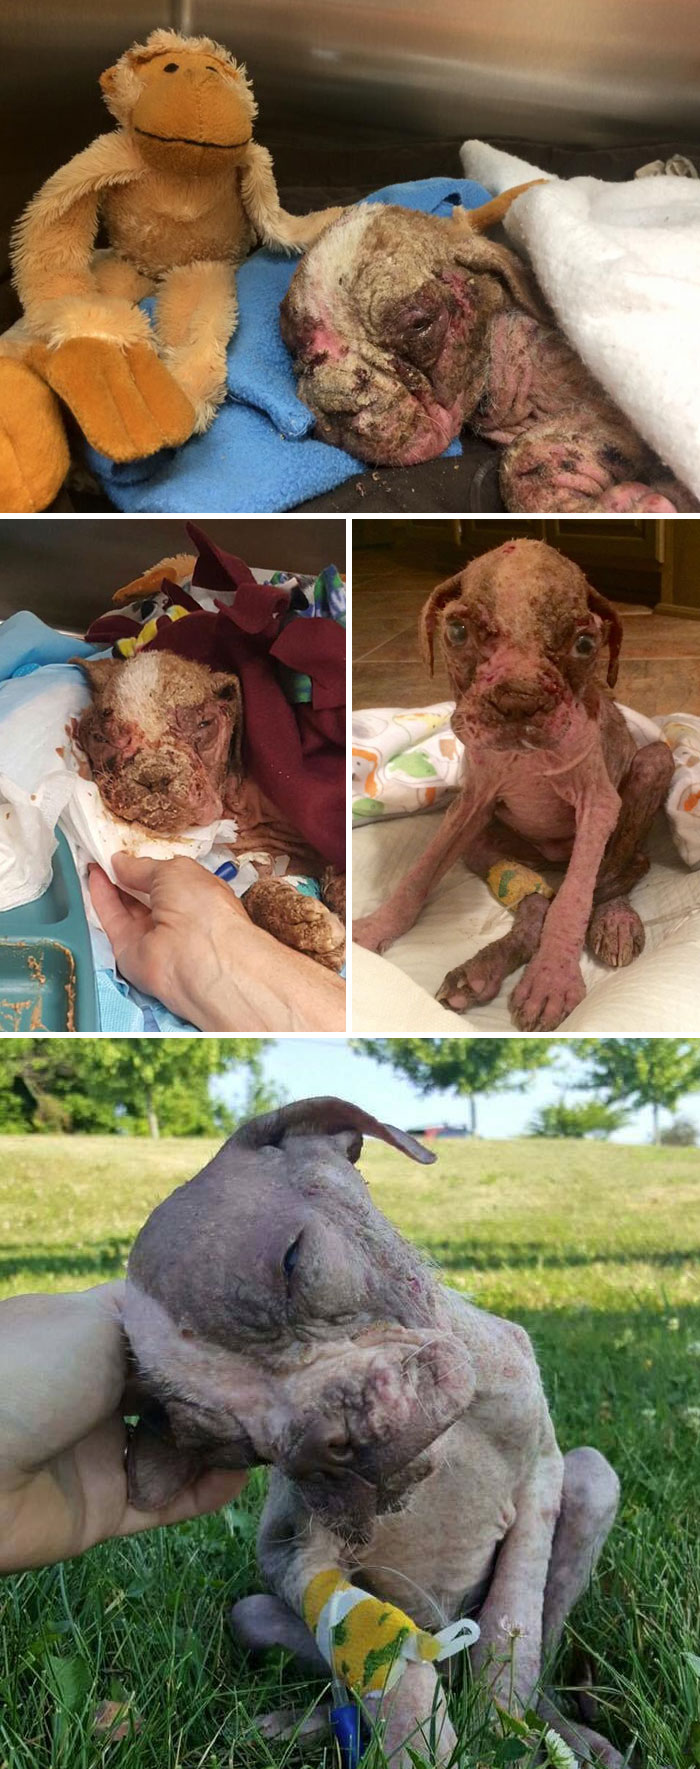 El antes y el después de 15 transformaciones de perros rescatados que muestran lo que puede hacer el amor 